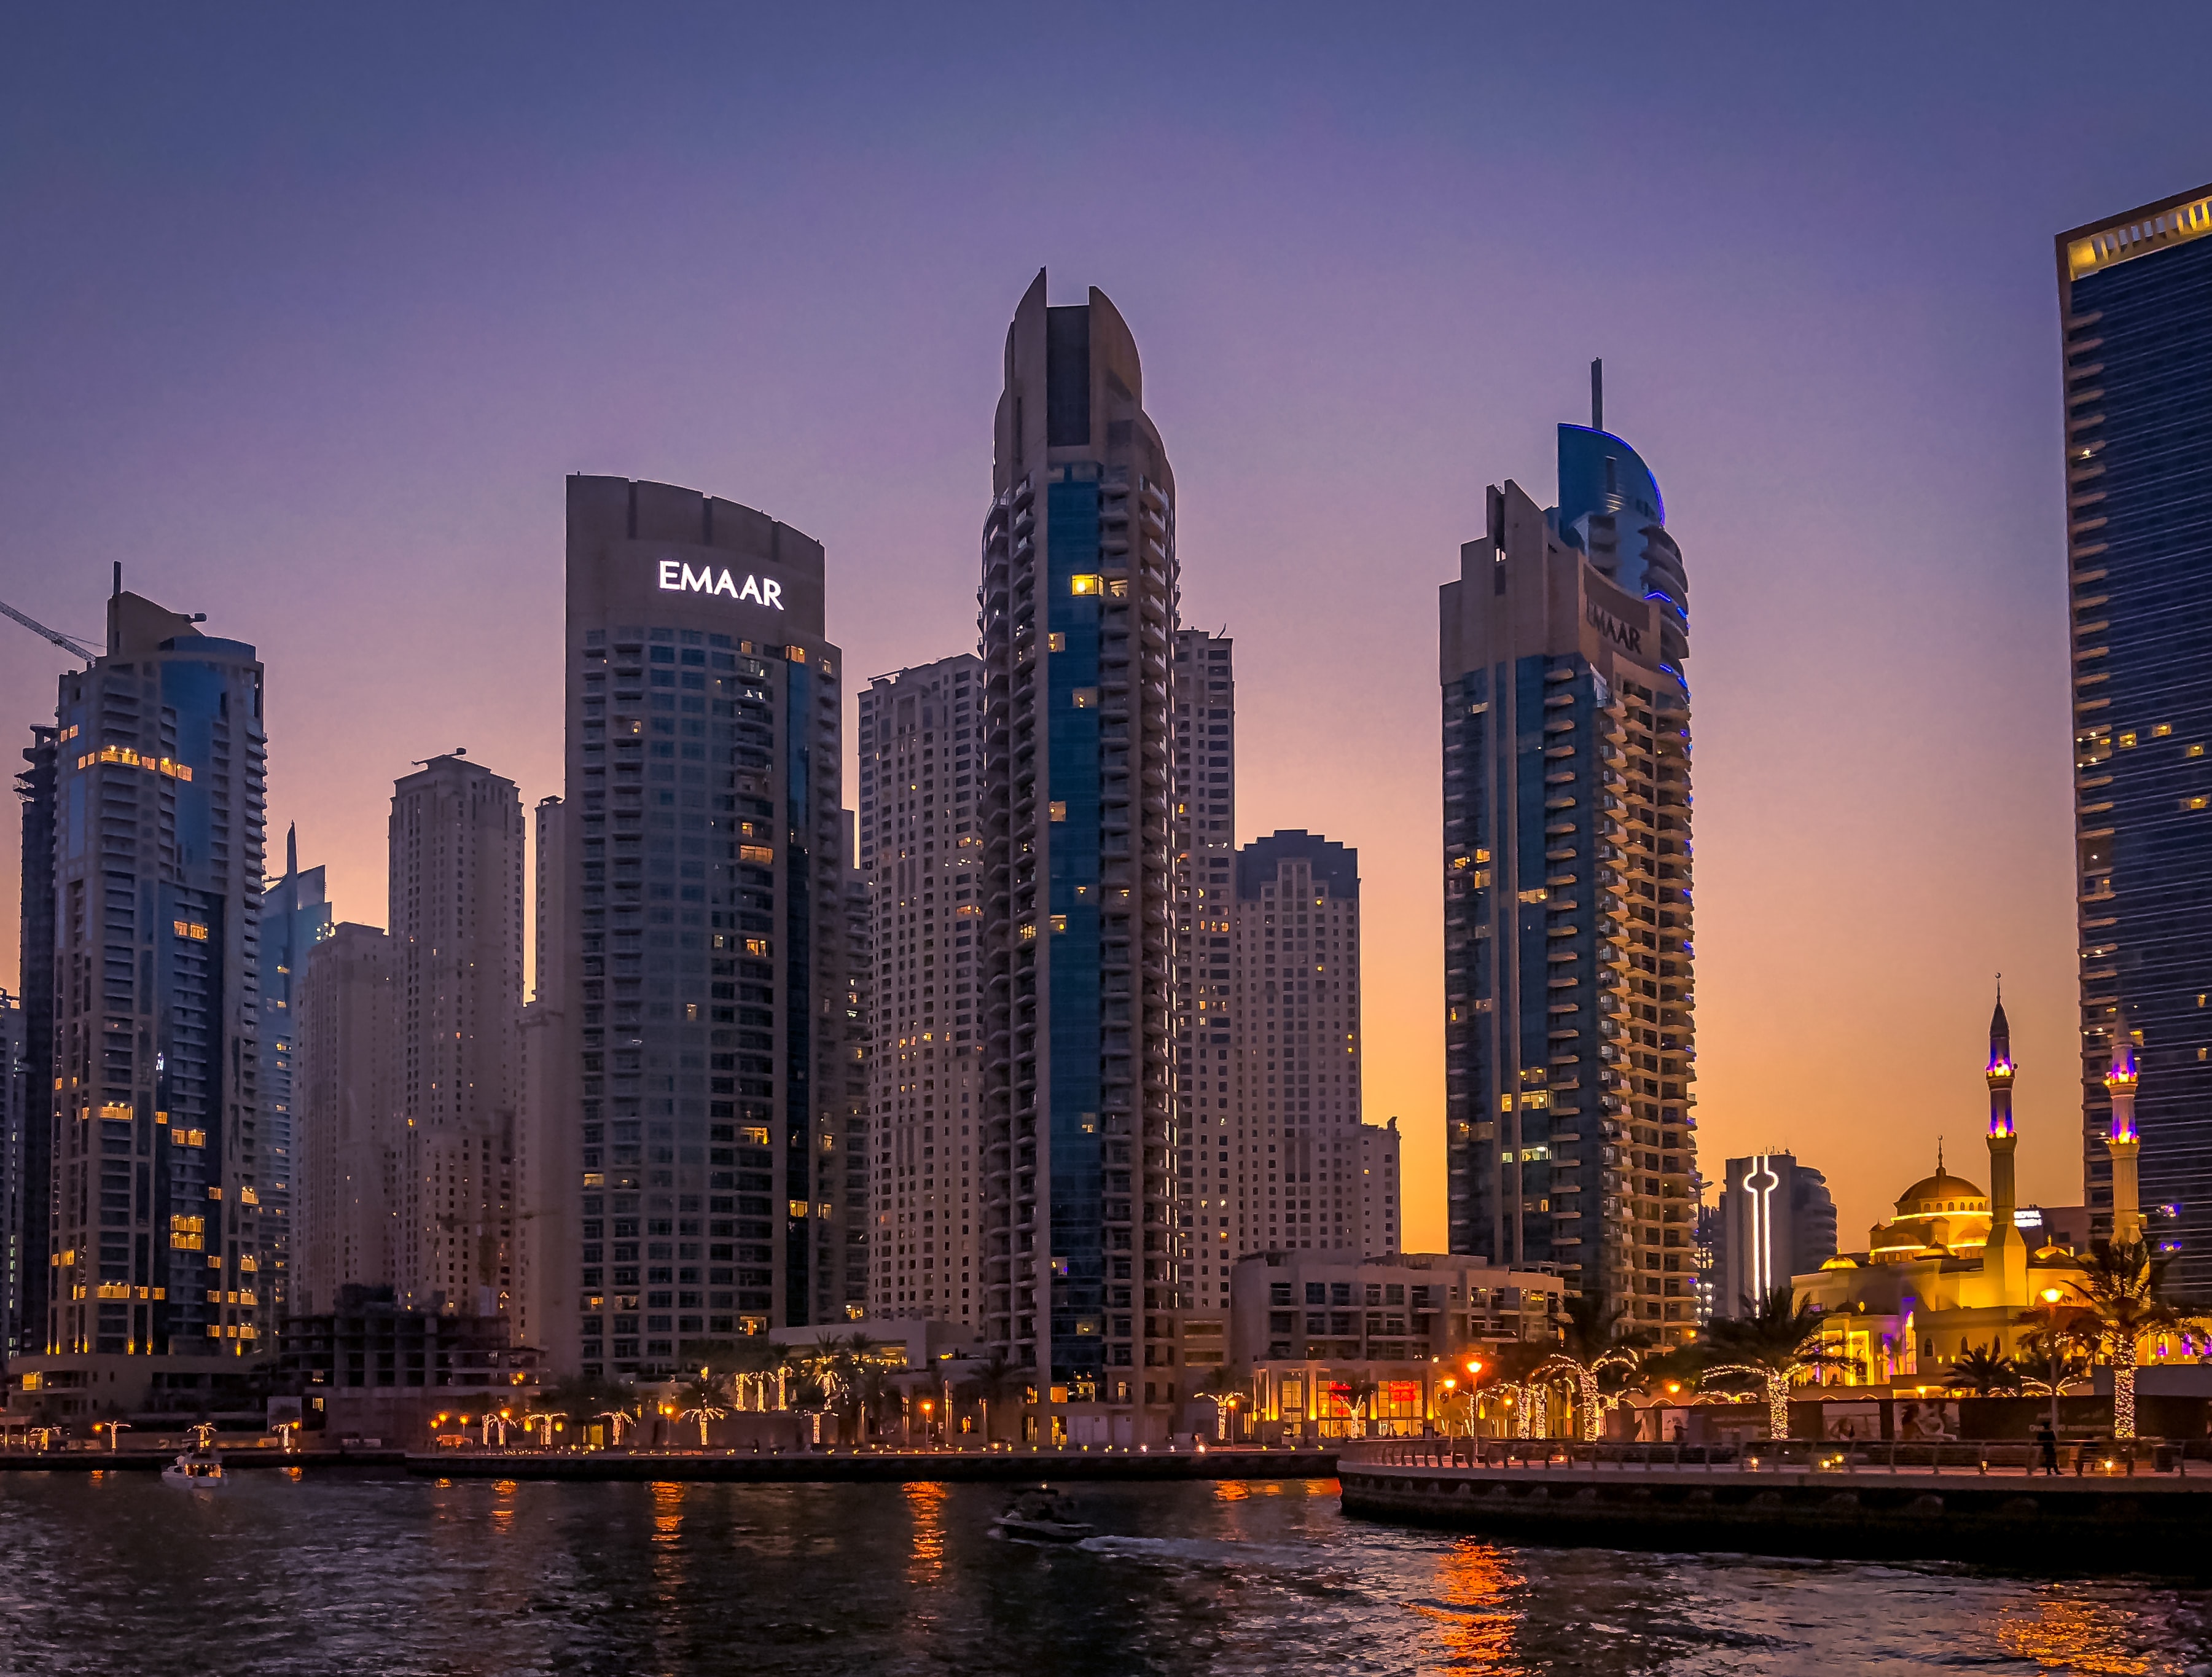 Day 03: Dubai - Sunset Show Cruise in the Dubai Marina